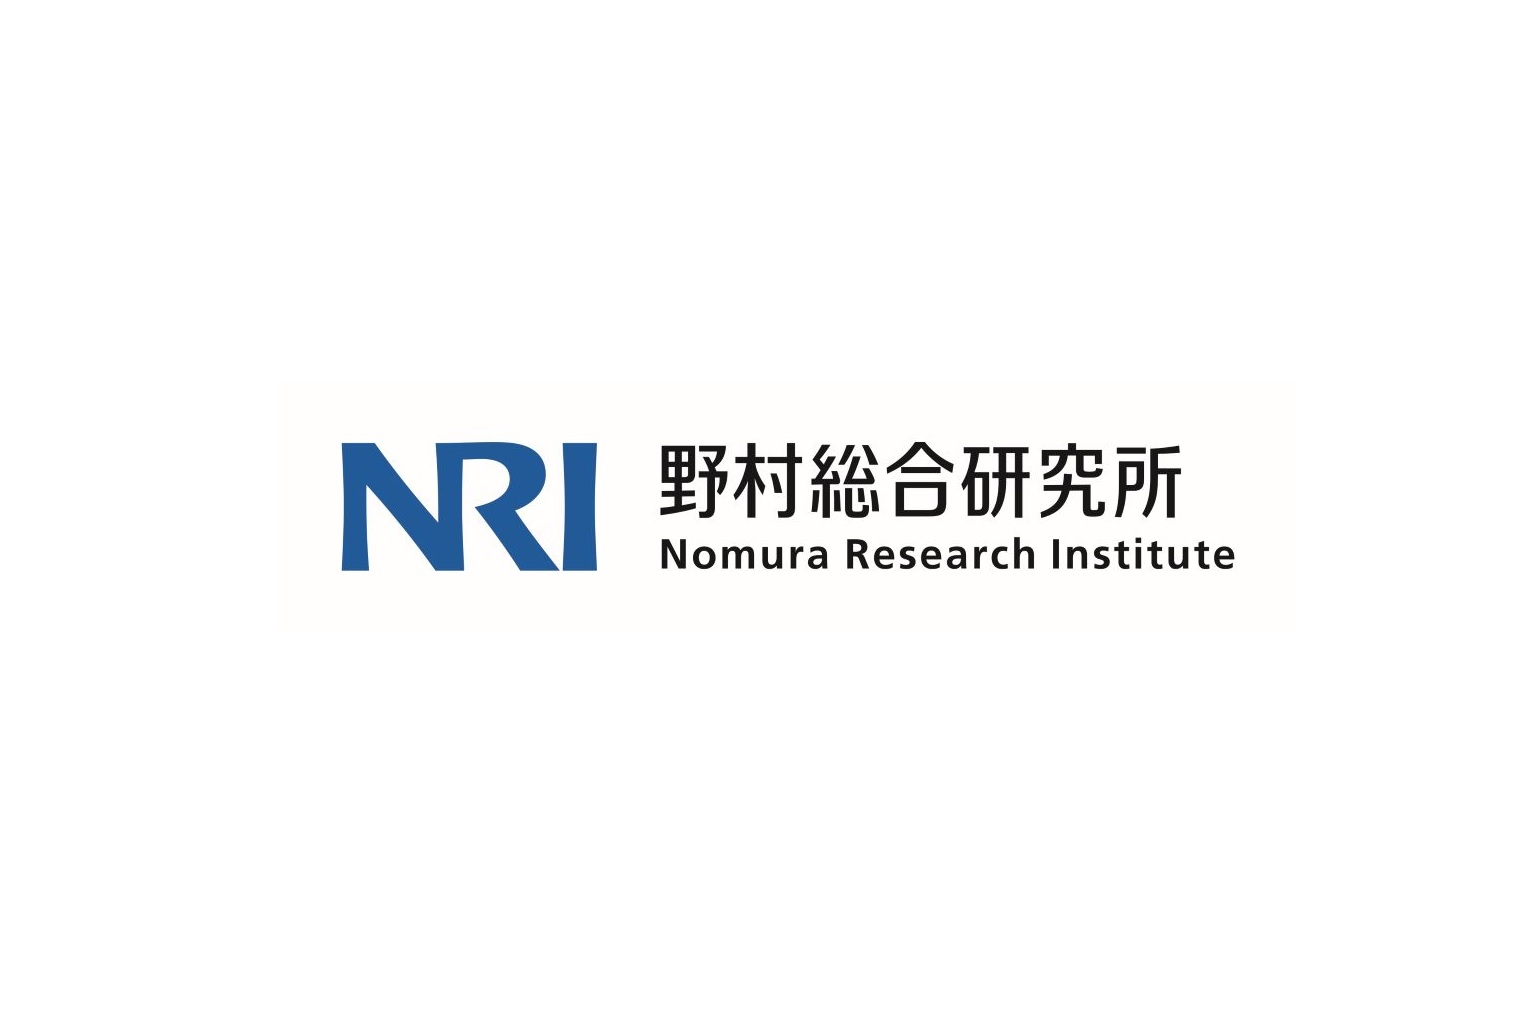 NRI_logo